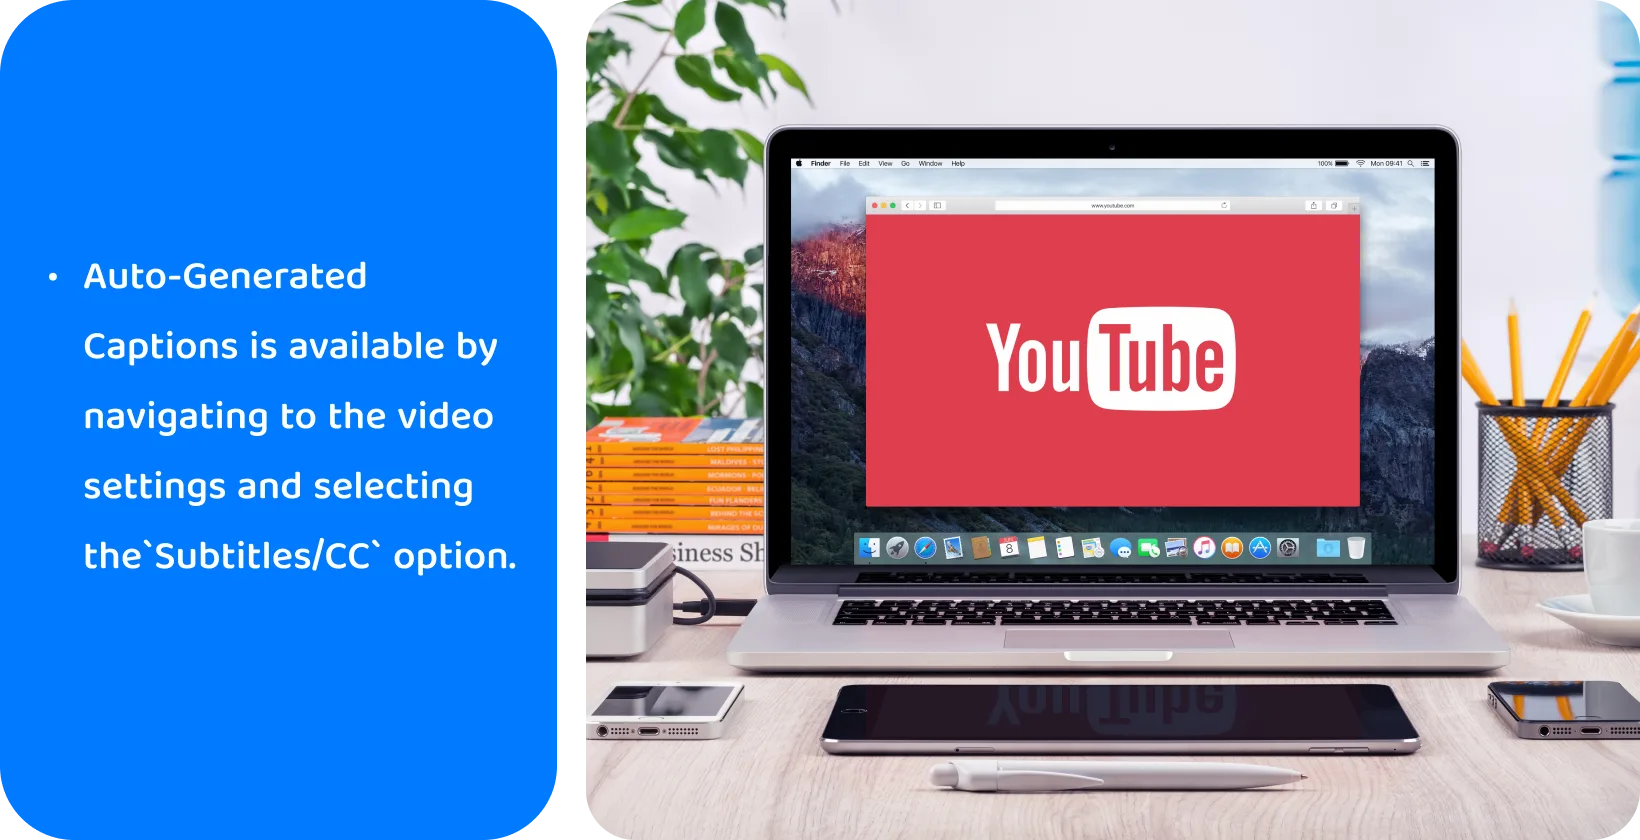 YouTube σε οθόνη φορητού υπολογιστή, προωθώντας τη χρήση υπότιτλων που δημιουργούνται αυτόματα για προσβασιμότητα βίντεο και SEO.